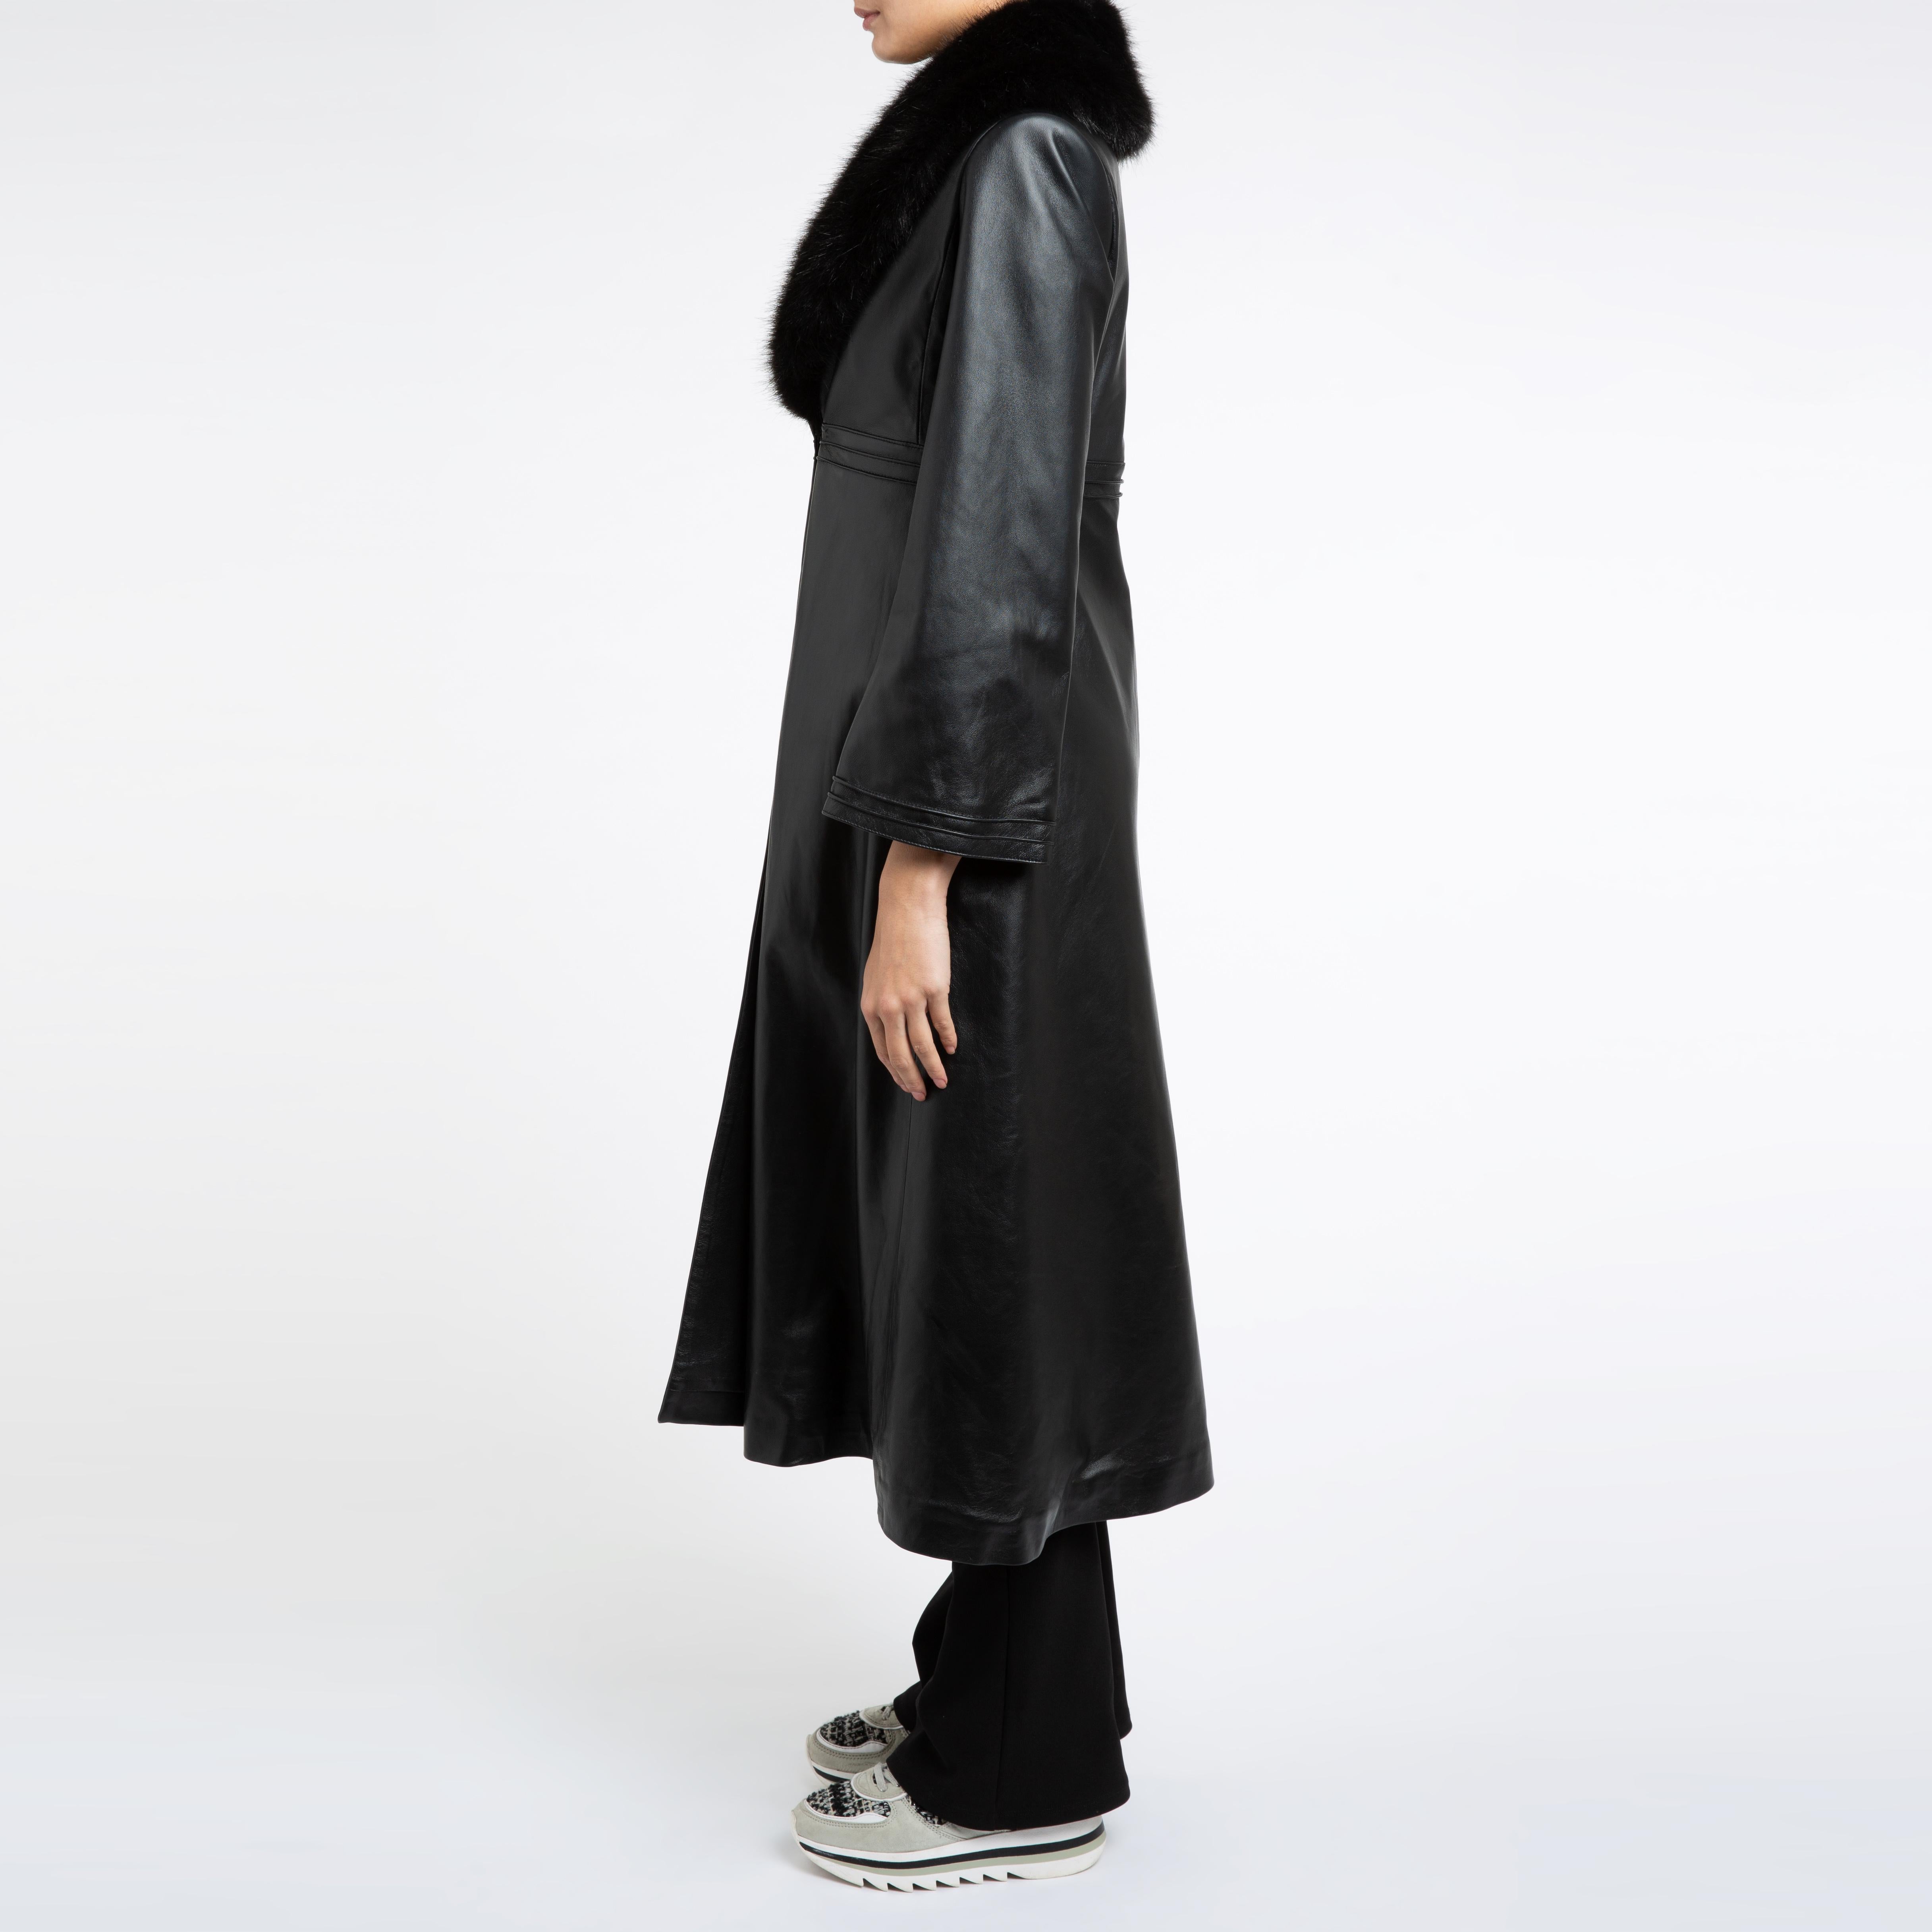 Verheyen London Edward Leather Coat with Faux Fur Collar in Black - Size uk 8 10